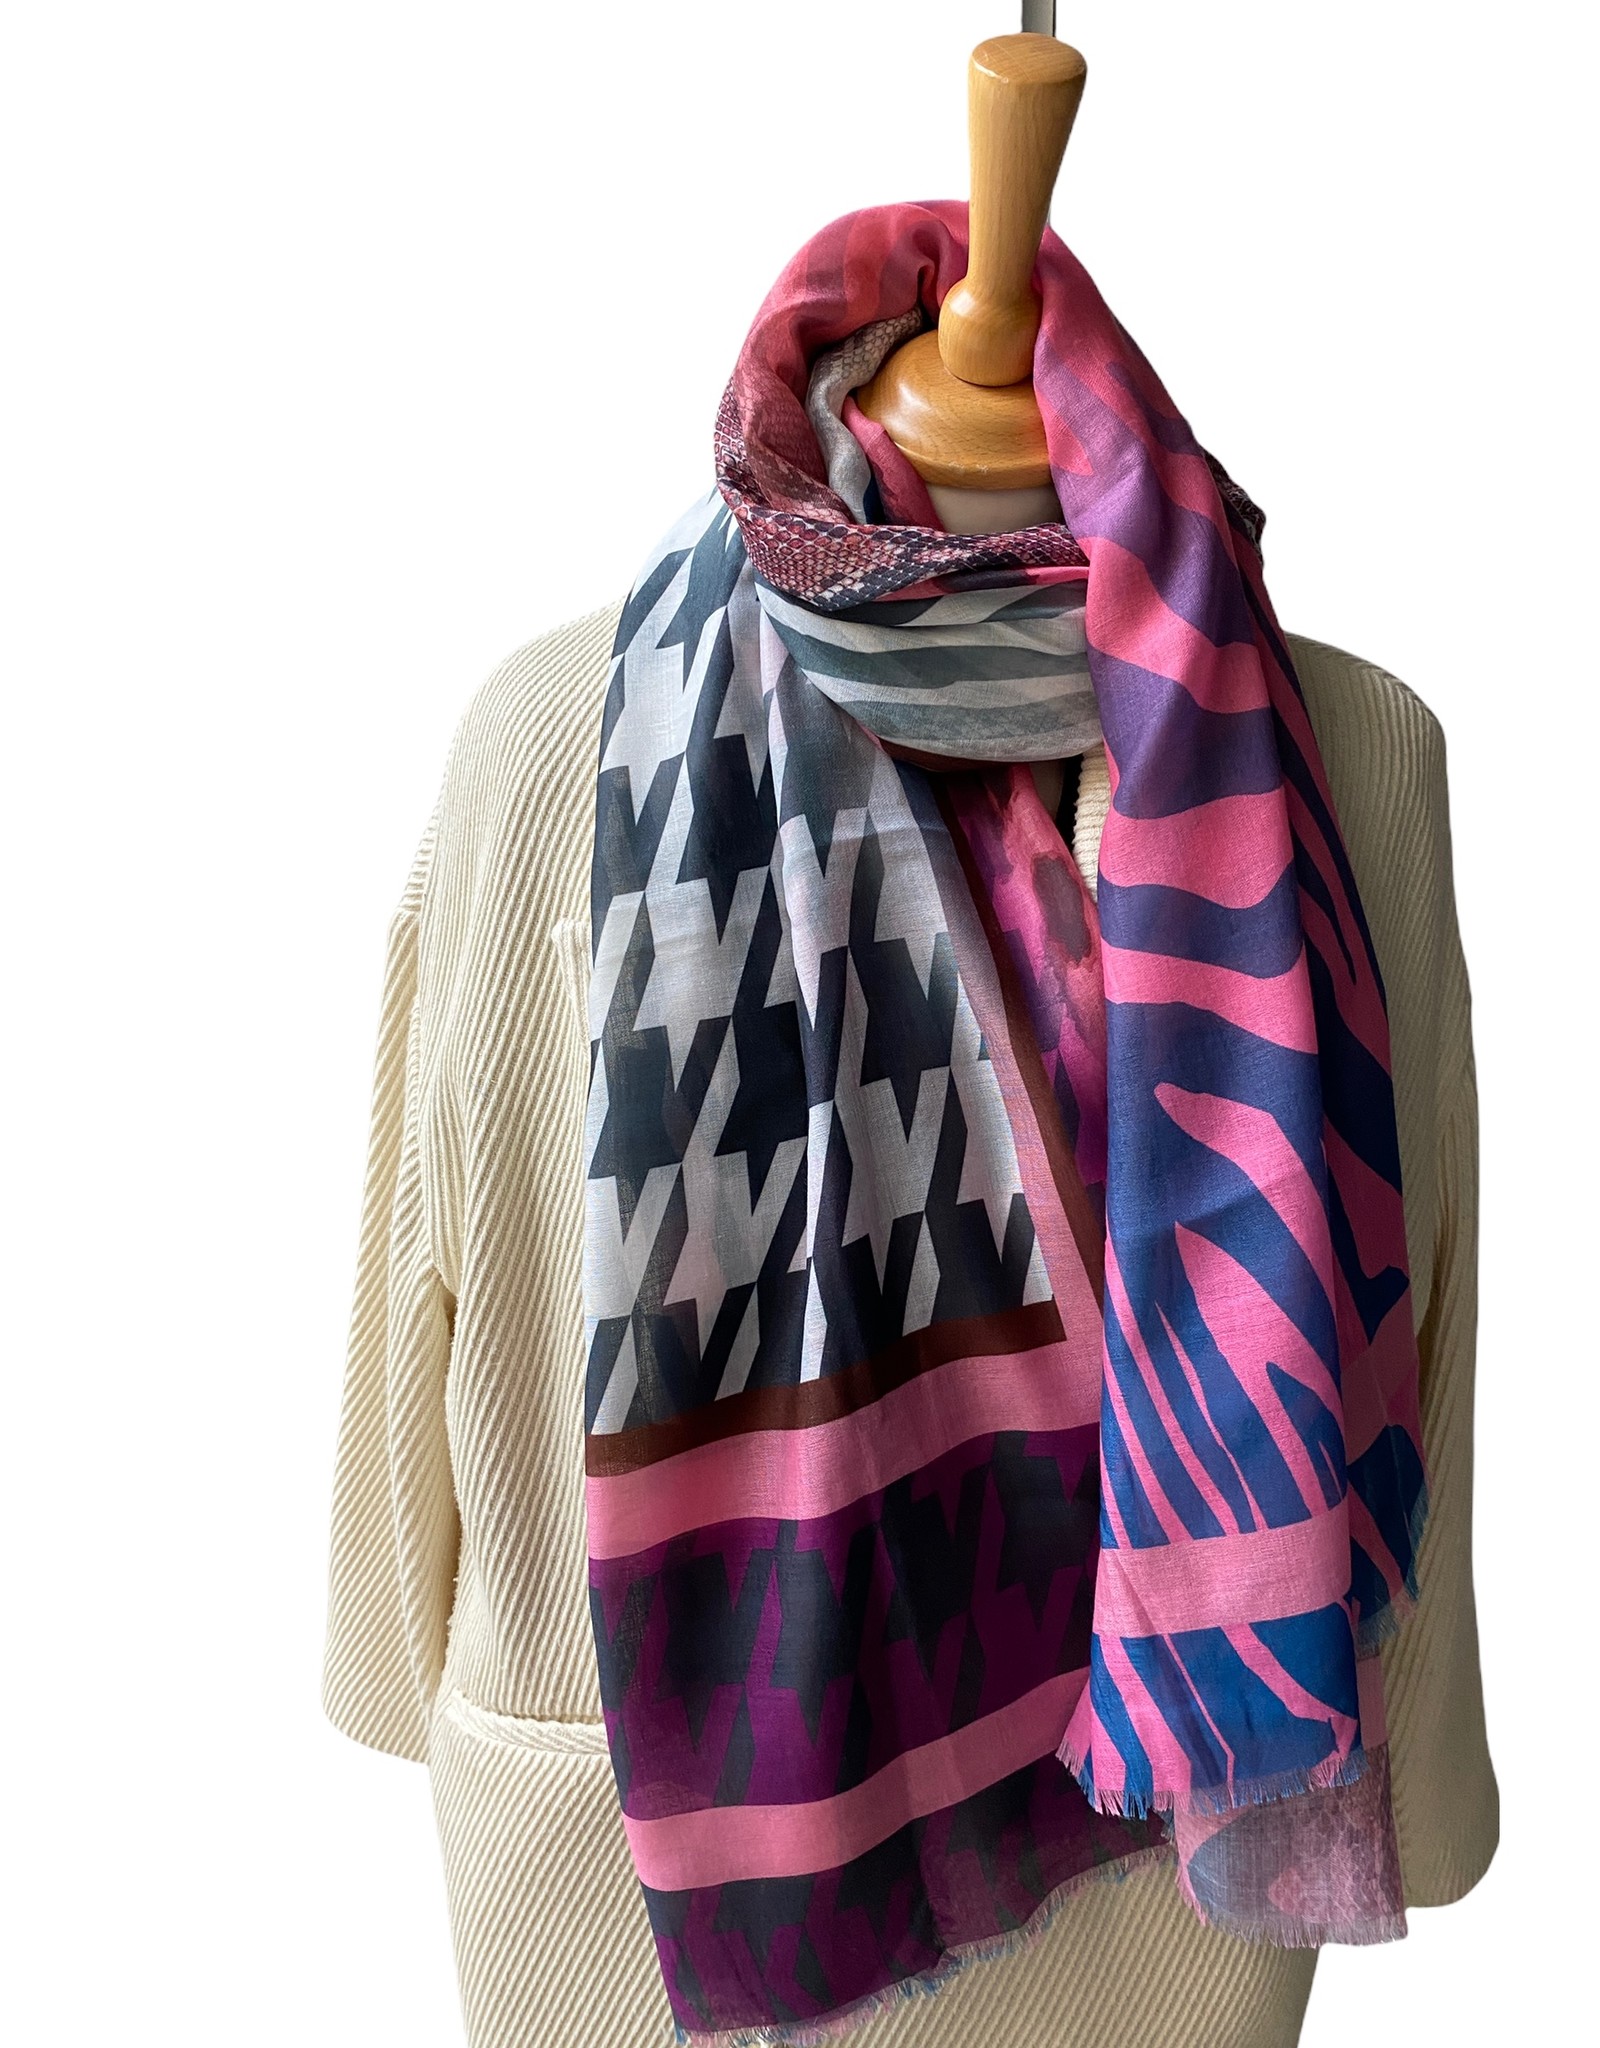 Meerkleurige katoenen sjaal met pied de poule en panterprint.  zwart en roze kleuren